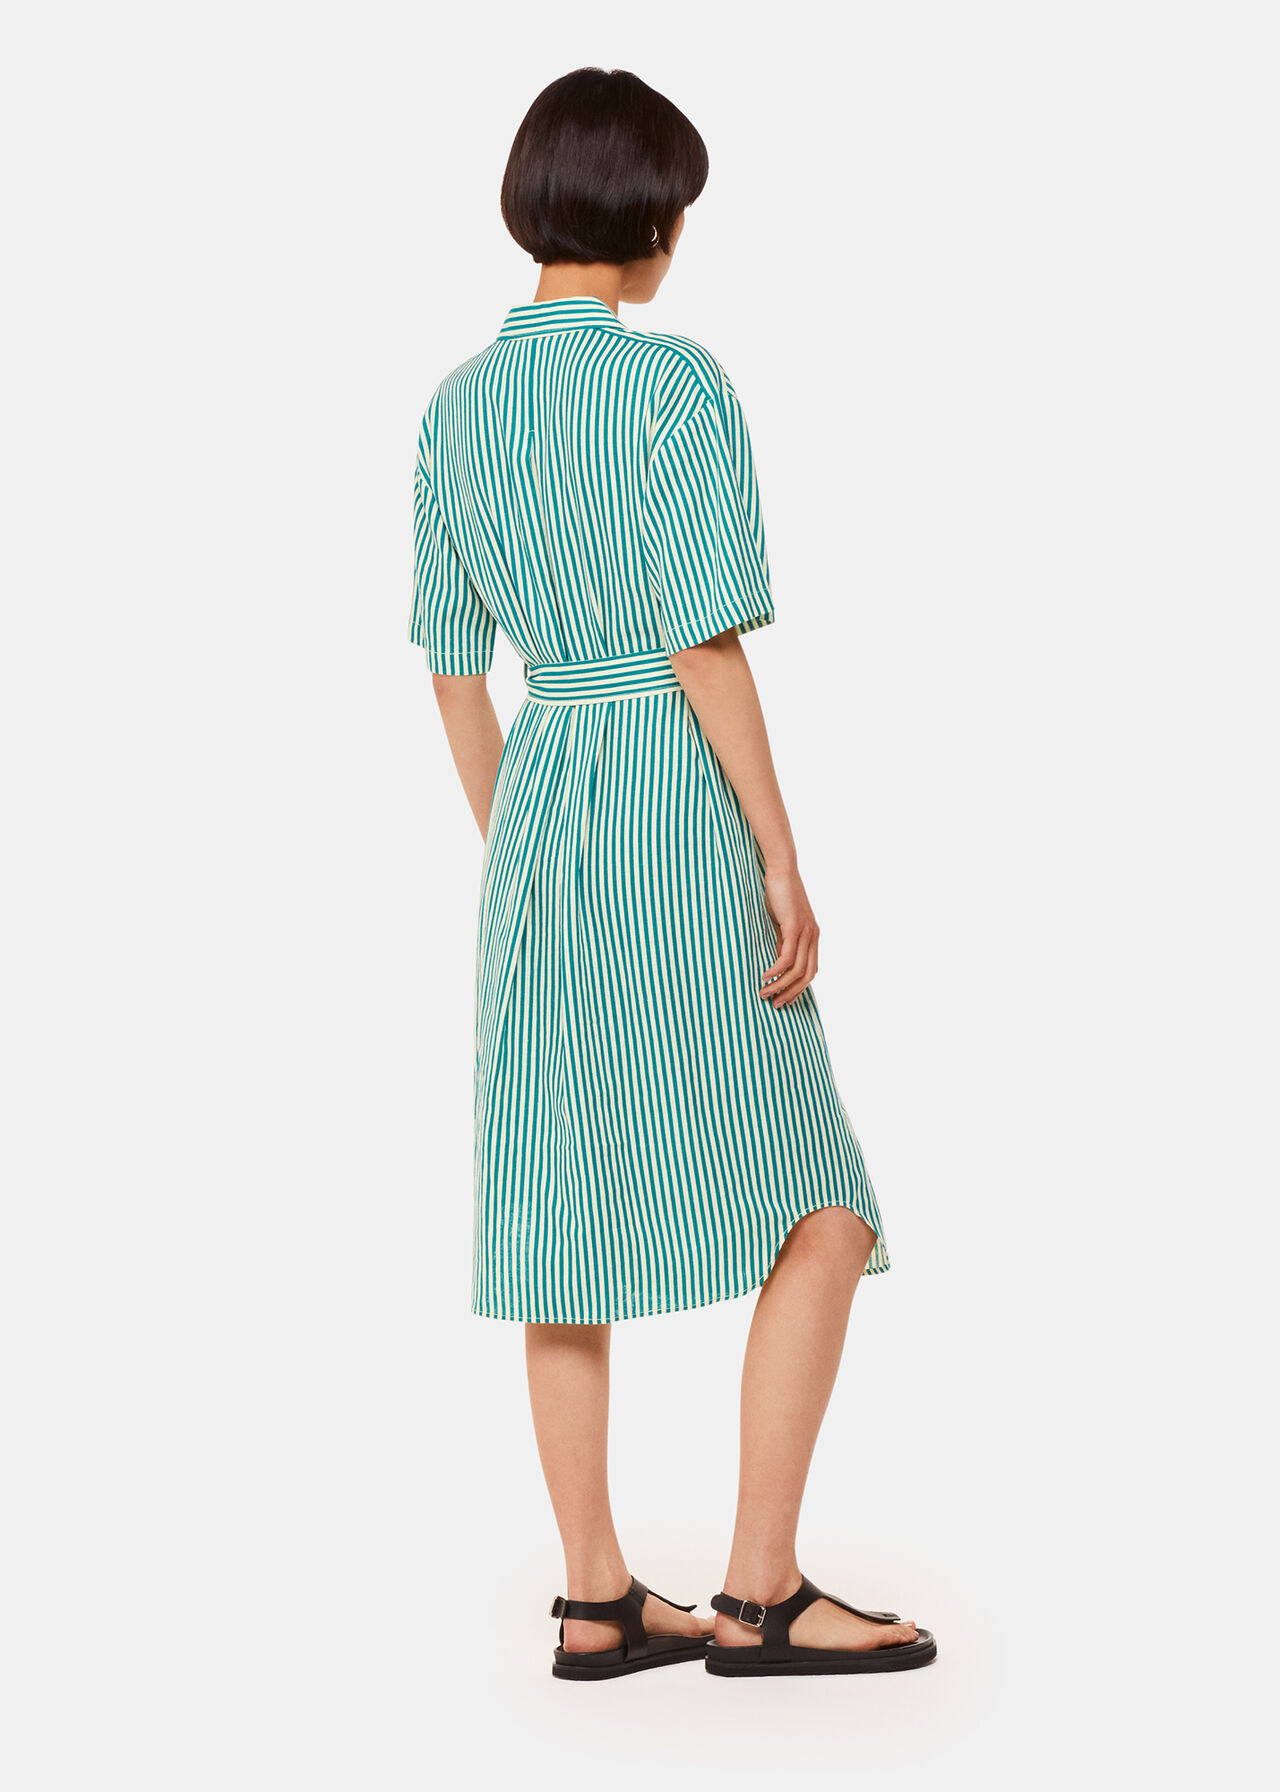 Stripe Linen Blend Dress